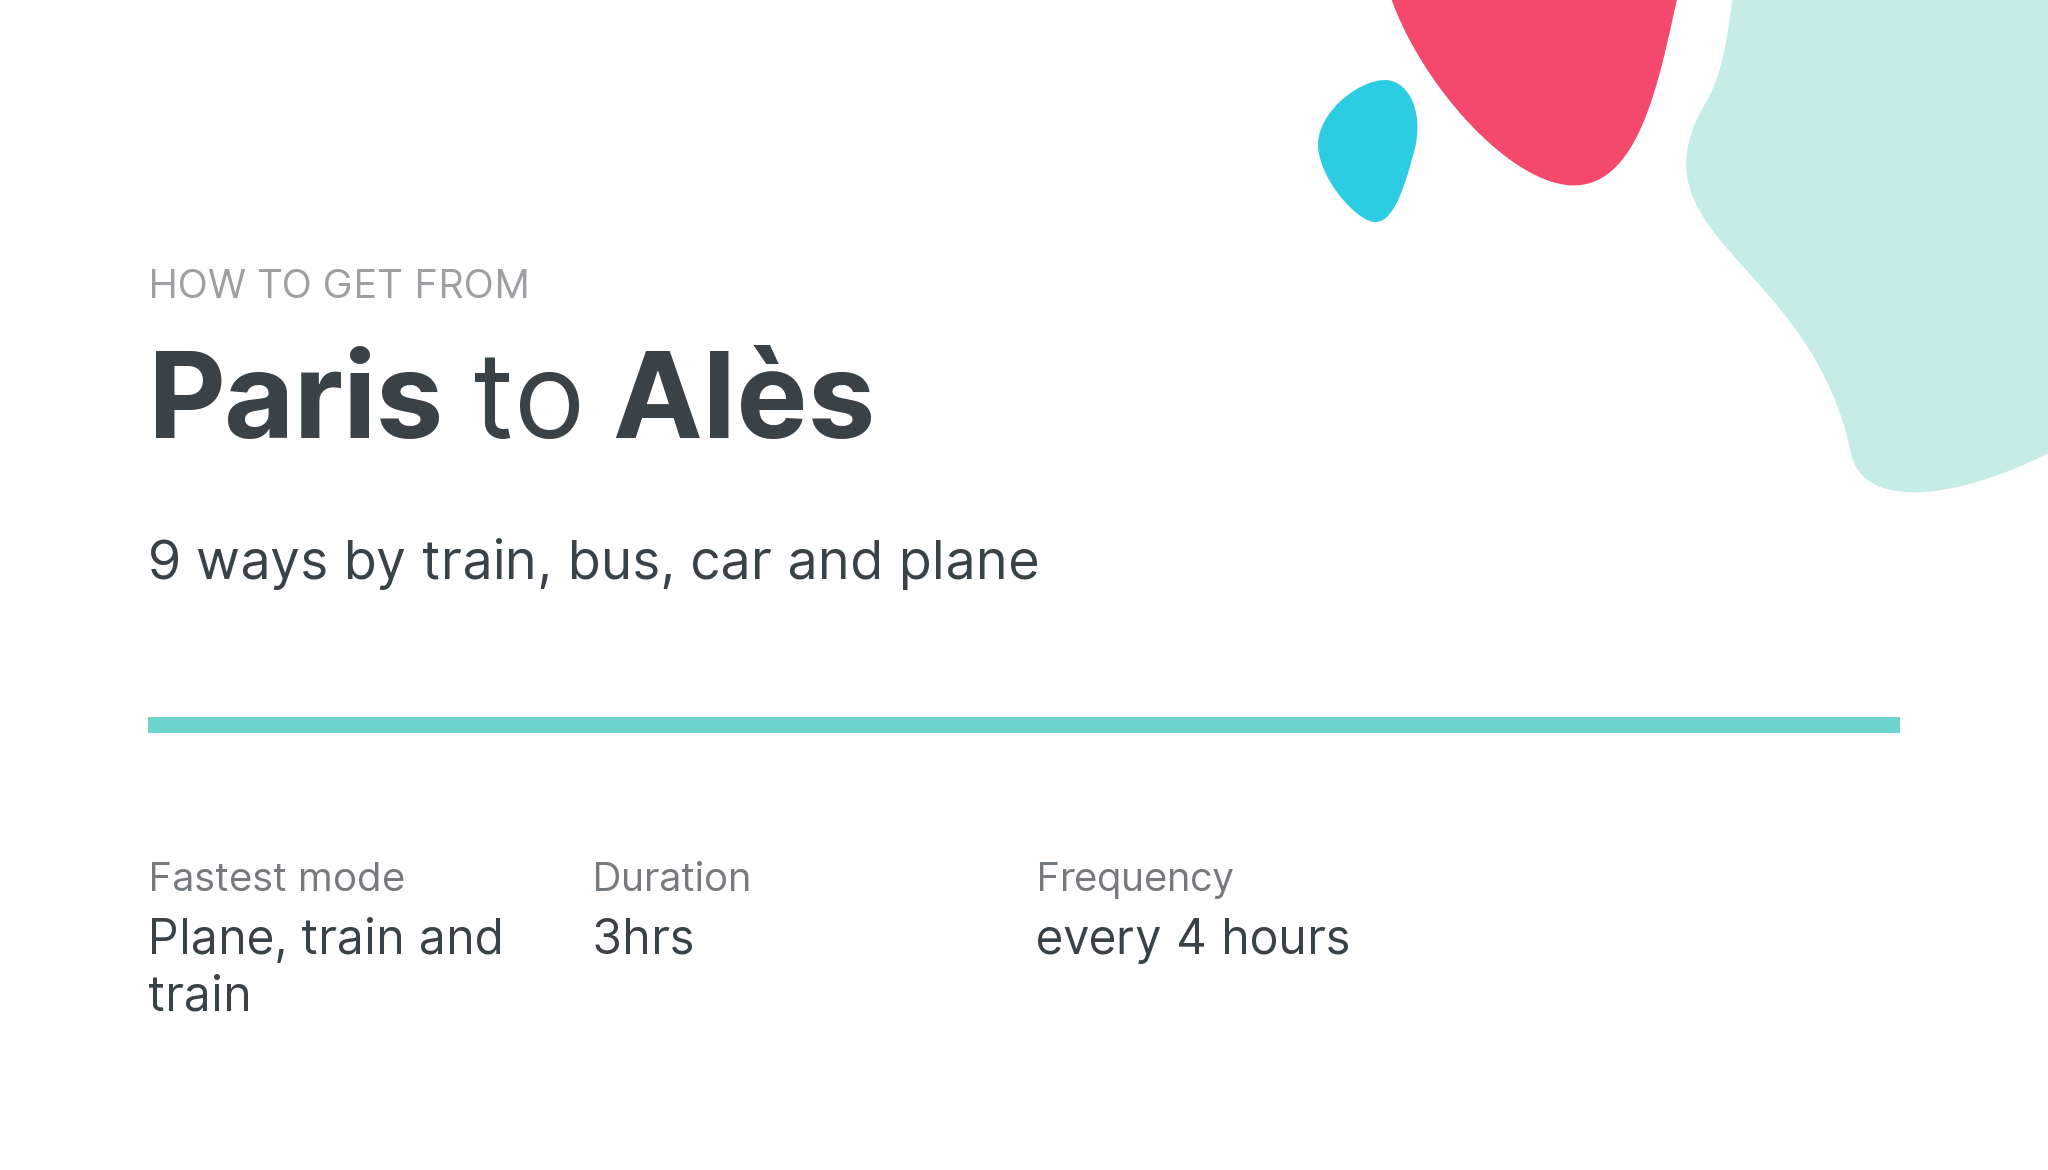 How do I get from Paris to Alès